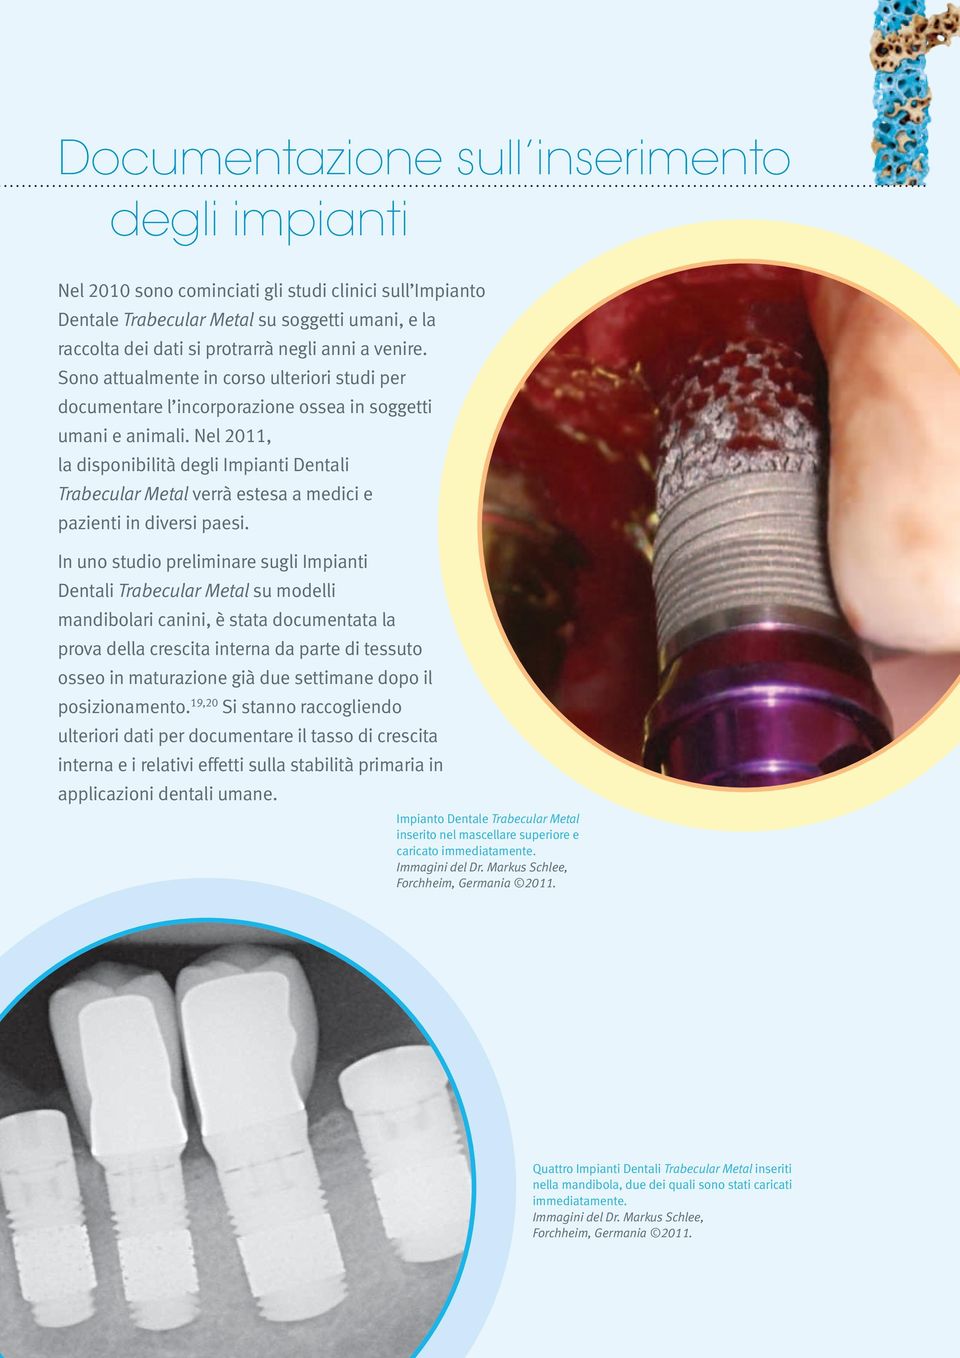 Nel 2011, la disponibilità degli Impianti Dentali Trabecular Metal verrà estesa a medici e pazienti in diversi paesi.